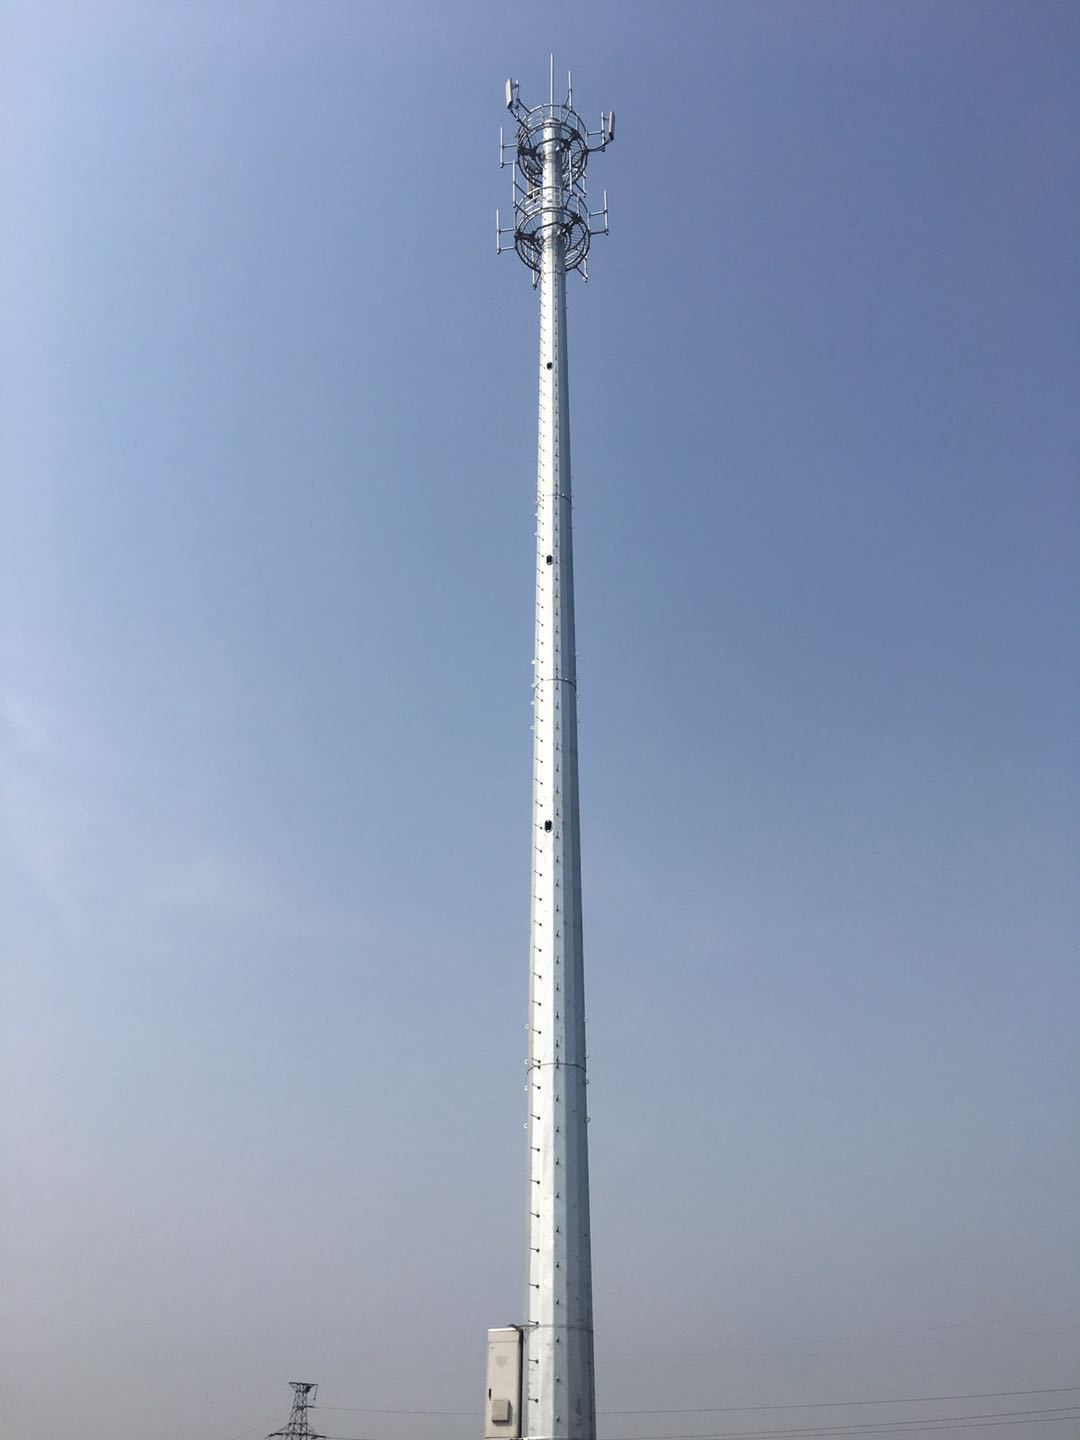 2、墓前200米有發射塔會影響風水嗎？ 